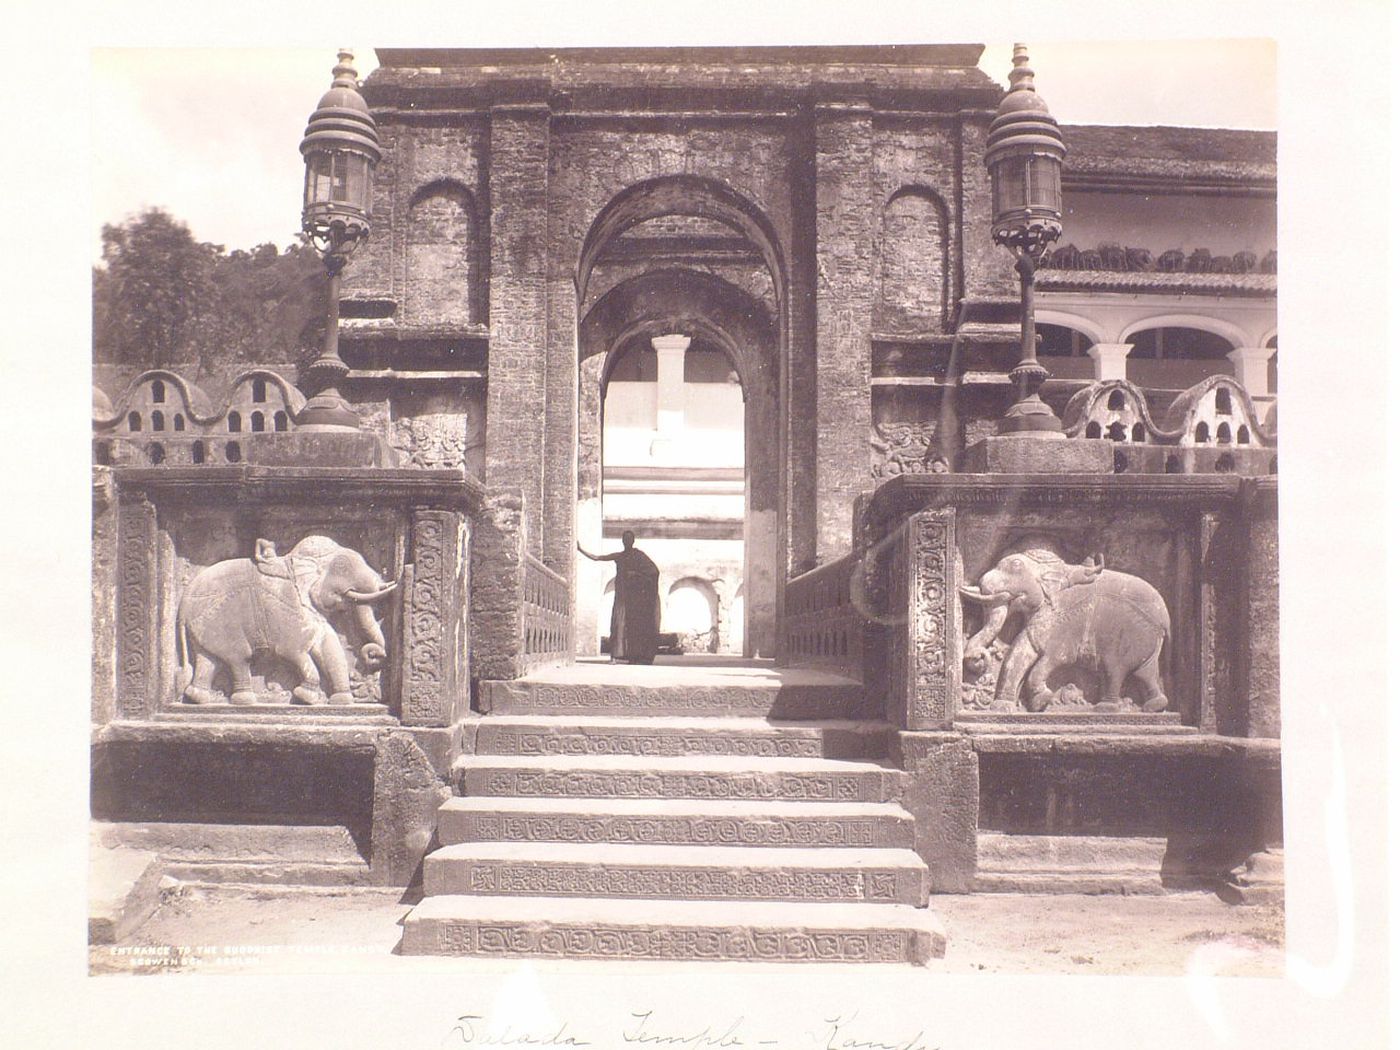 Entrance to the Buddhist temple Dalada Maligawa, or Temple of the Tooth, Sri Lanka